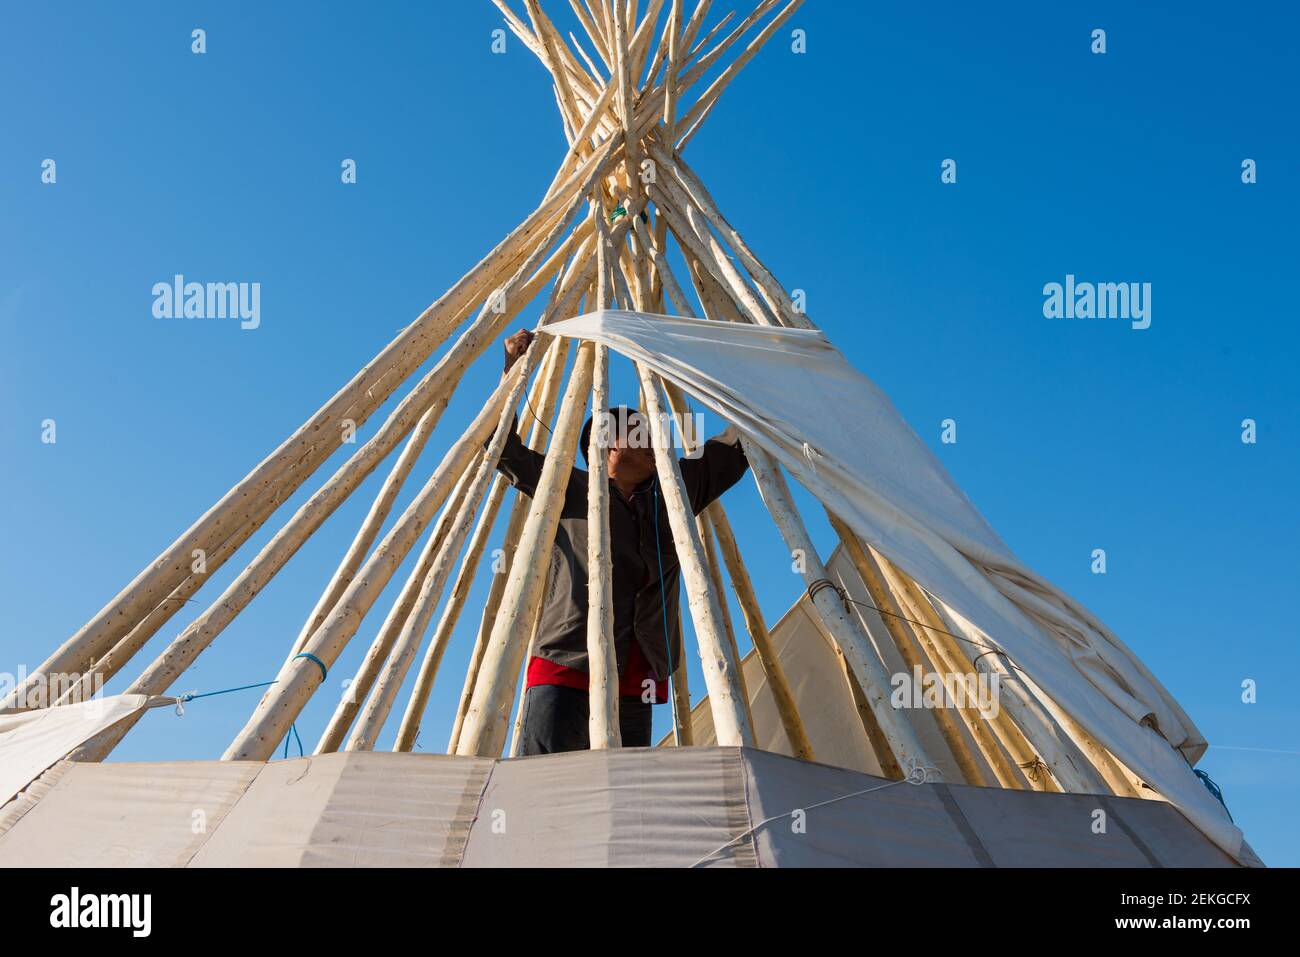 Homme autochtone construisant une tipi, Nord du Québec, Canada Banque D'Images